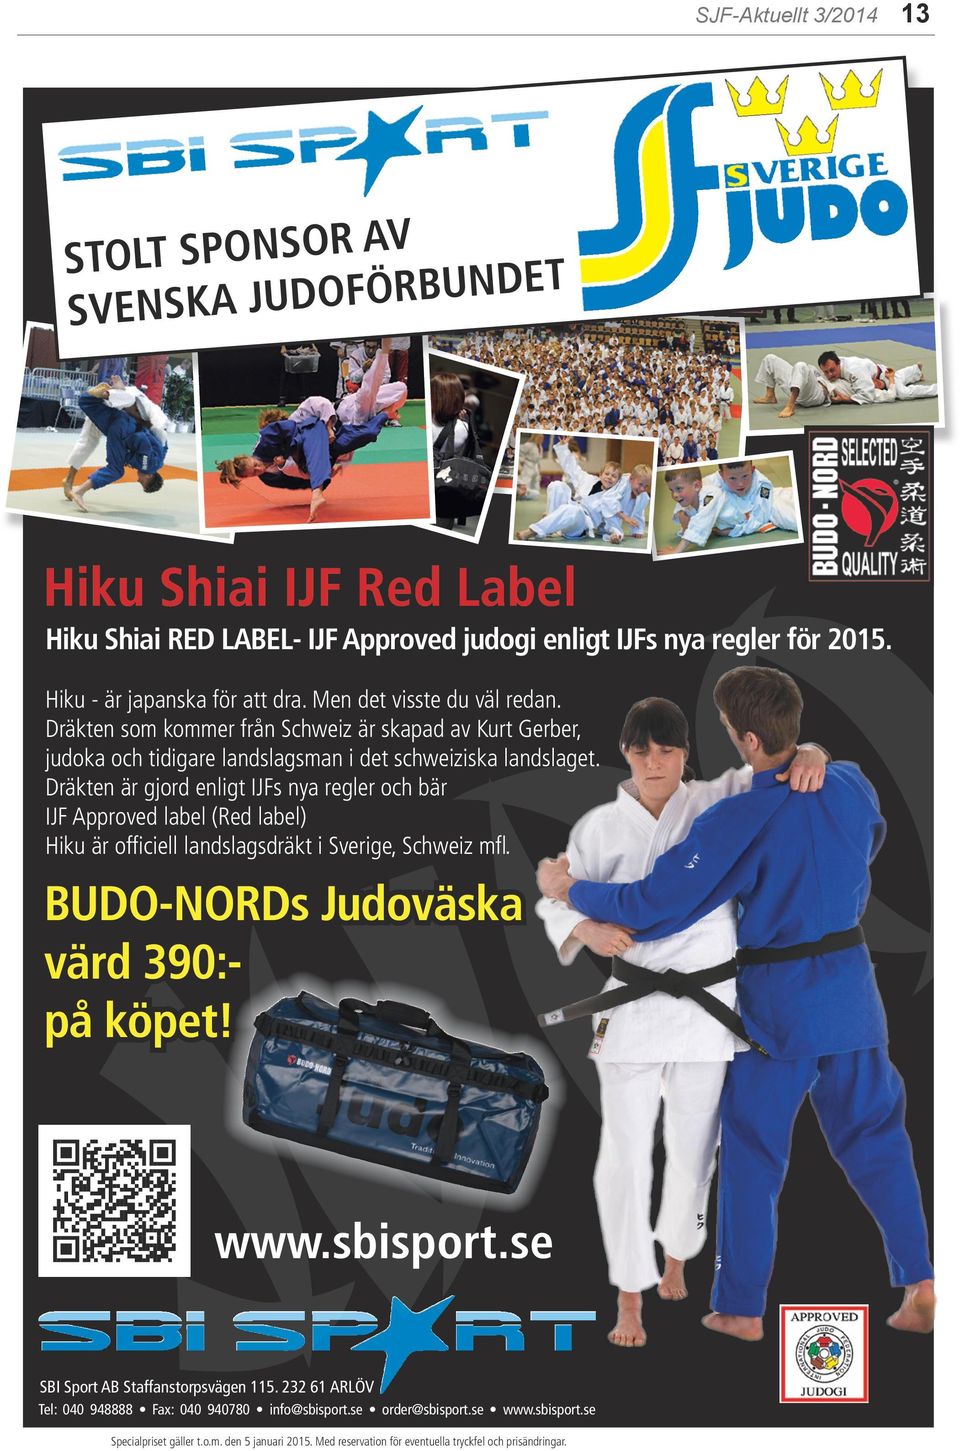 Dräkten är gjord enligt IJFs nya regler och bär IJF Approved label (Red label) Hiku är officiell landslagsdräkt i Sverige, Schweiz mfl. BUDO-NORDs Judoväska värd 390:- på köpet! JUDO www.sbisport.